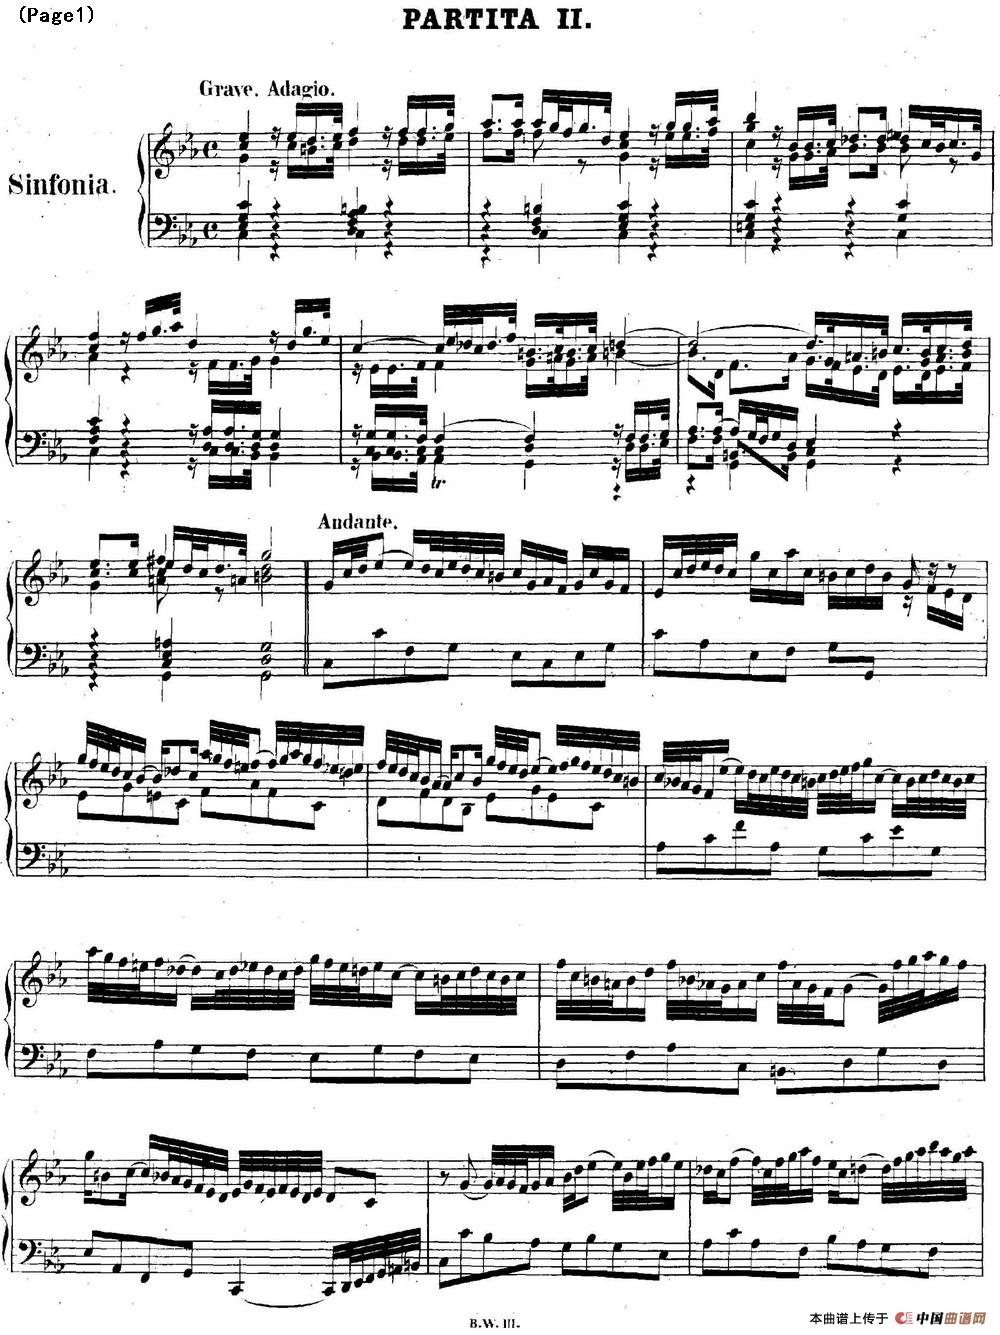 帕蒂塔6首德国组曲（No.2 c小调 巴赫 Partita c Minor BWV 826）(1)_BWV0826_页面_01.jpg